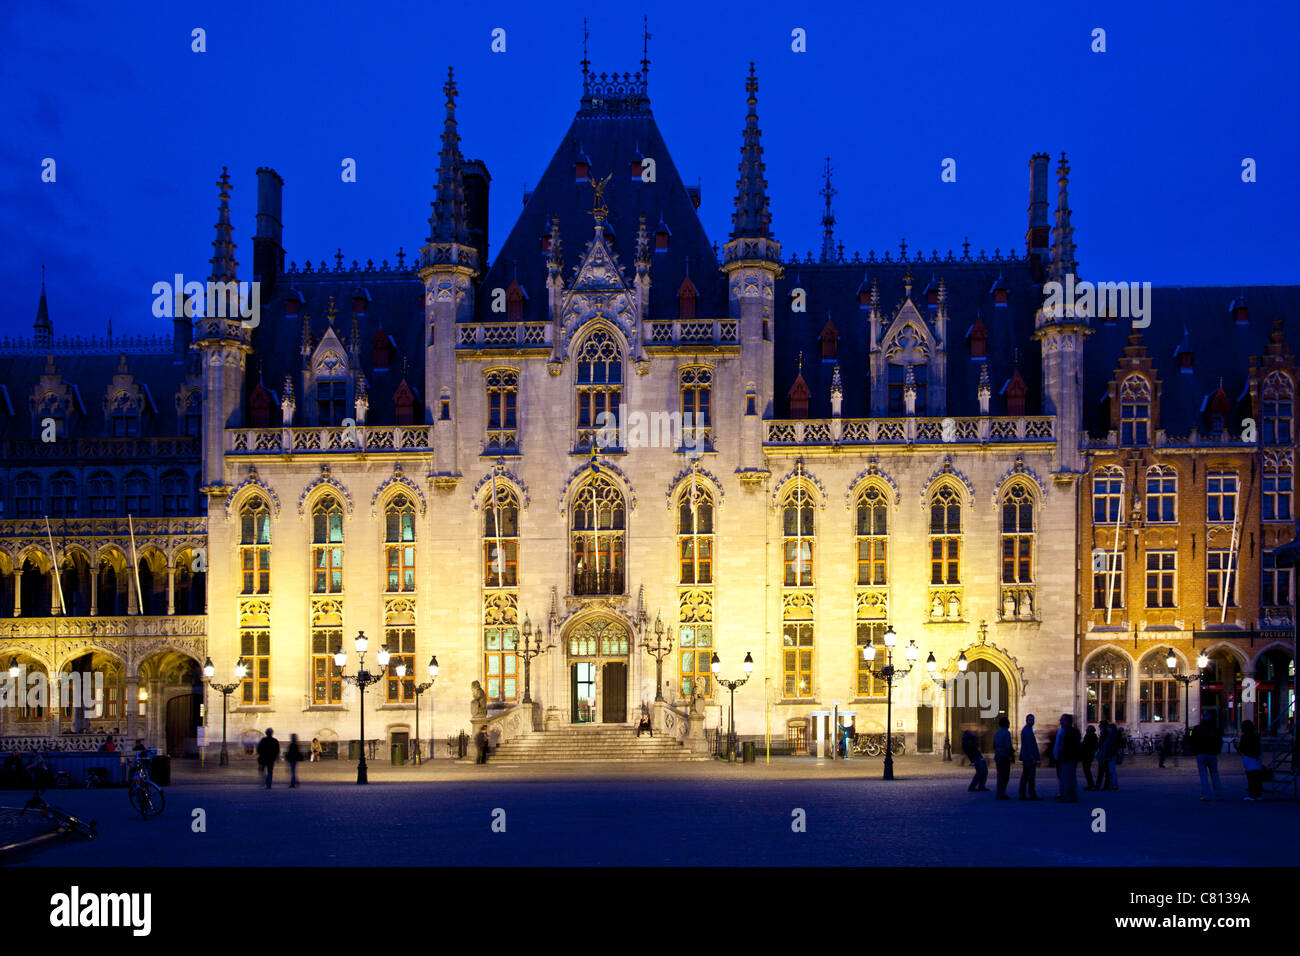 Le style néo-gothique ou de la Cour provinciale dans le Provinciaal Hof Grote Markt ou Place du Marché de Bruges, Belgique, au crépuscule Banque D'Images